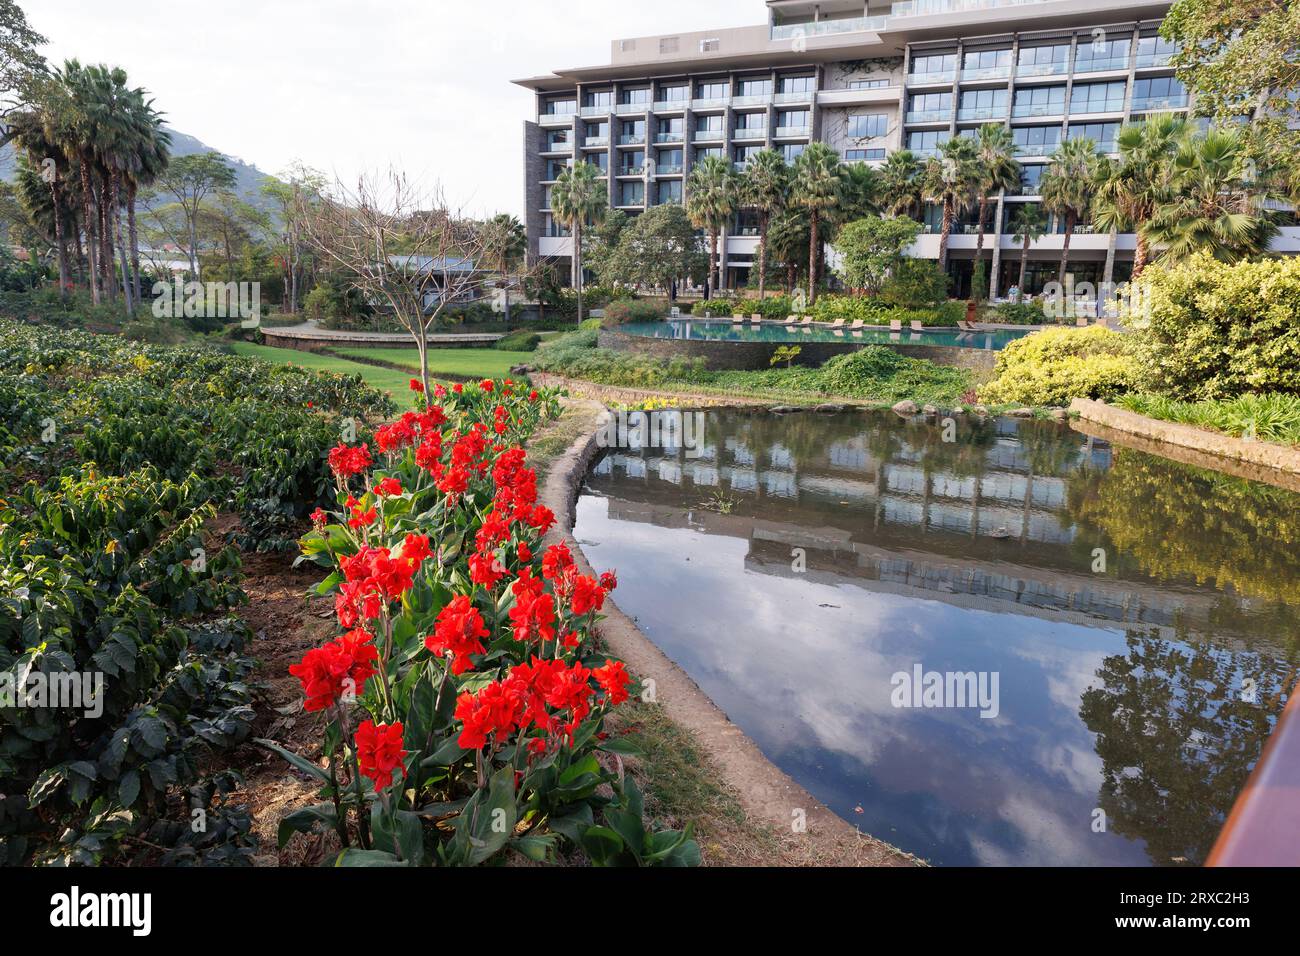 Vue d'ensemble des terrains de l'hôtel Gran Meliá Arusha, Arusha, Tanzanie. Banque D'Images